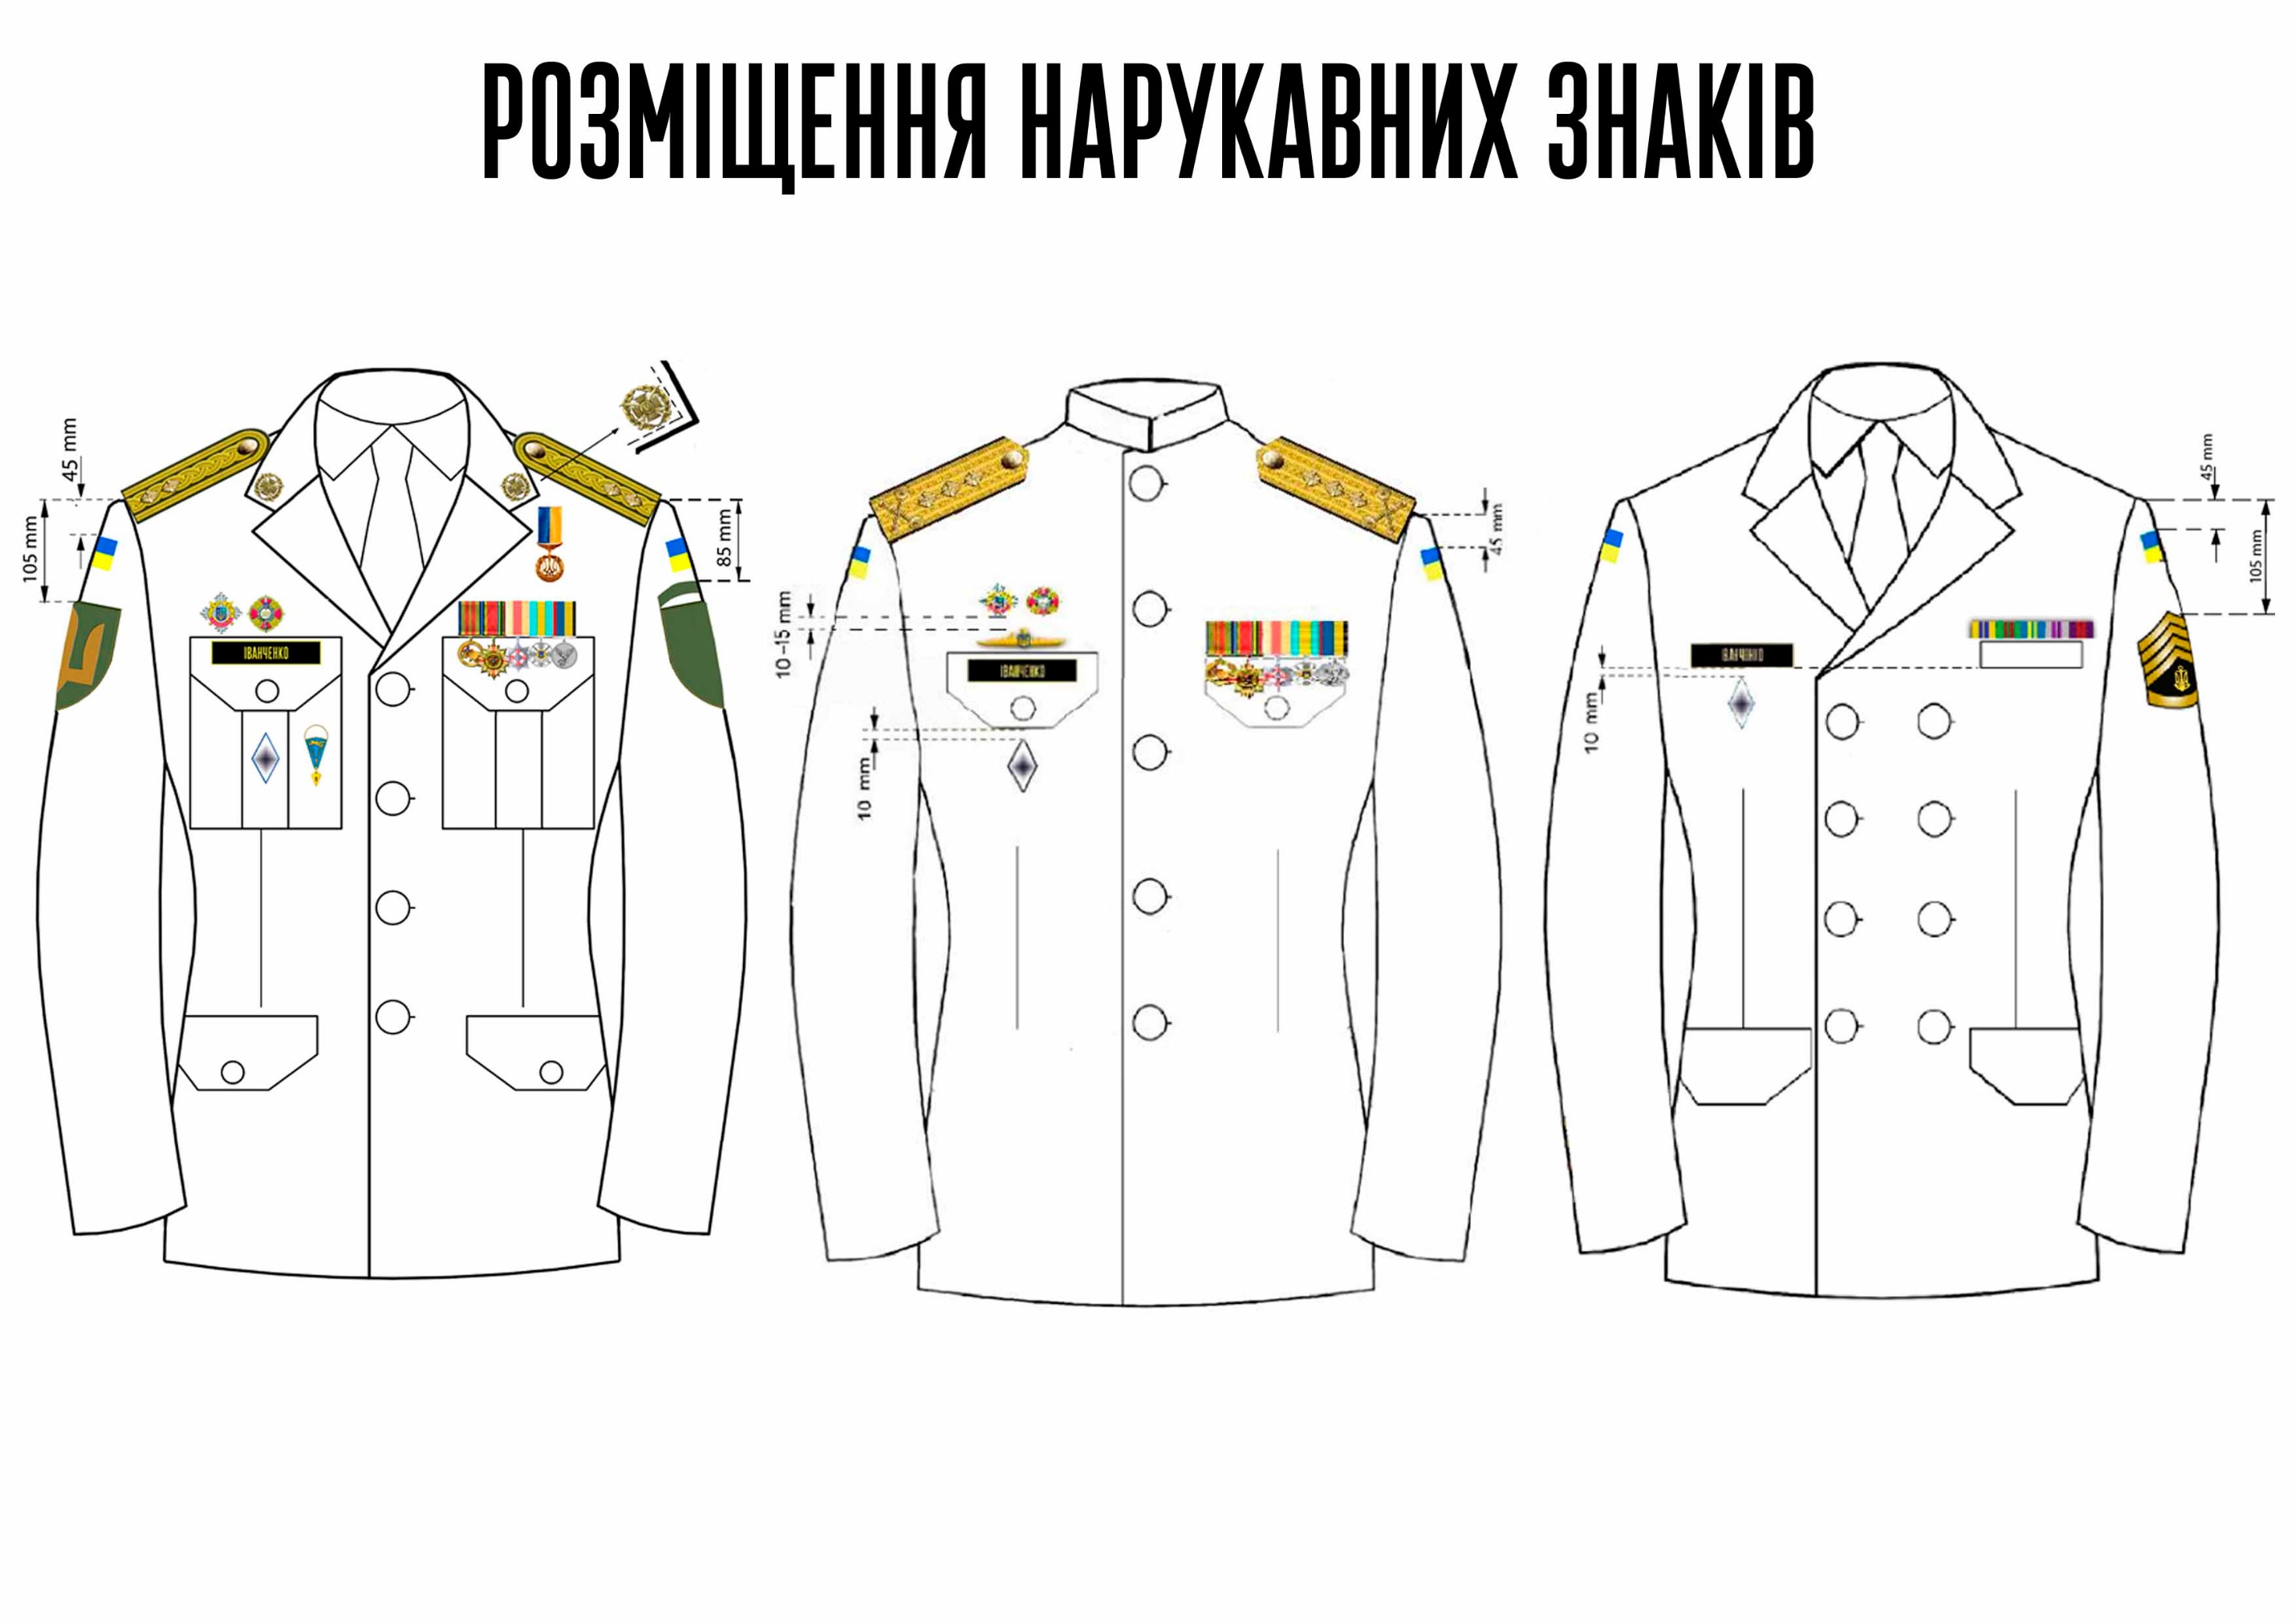 Парадная форма одежды военнослужащих 2018 размещение знаков